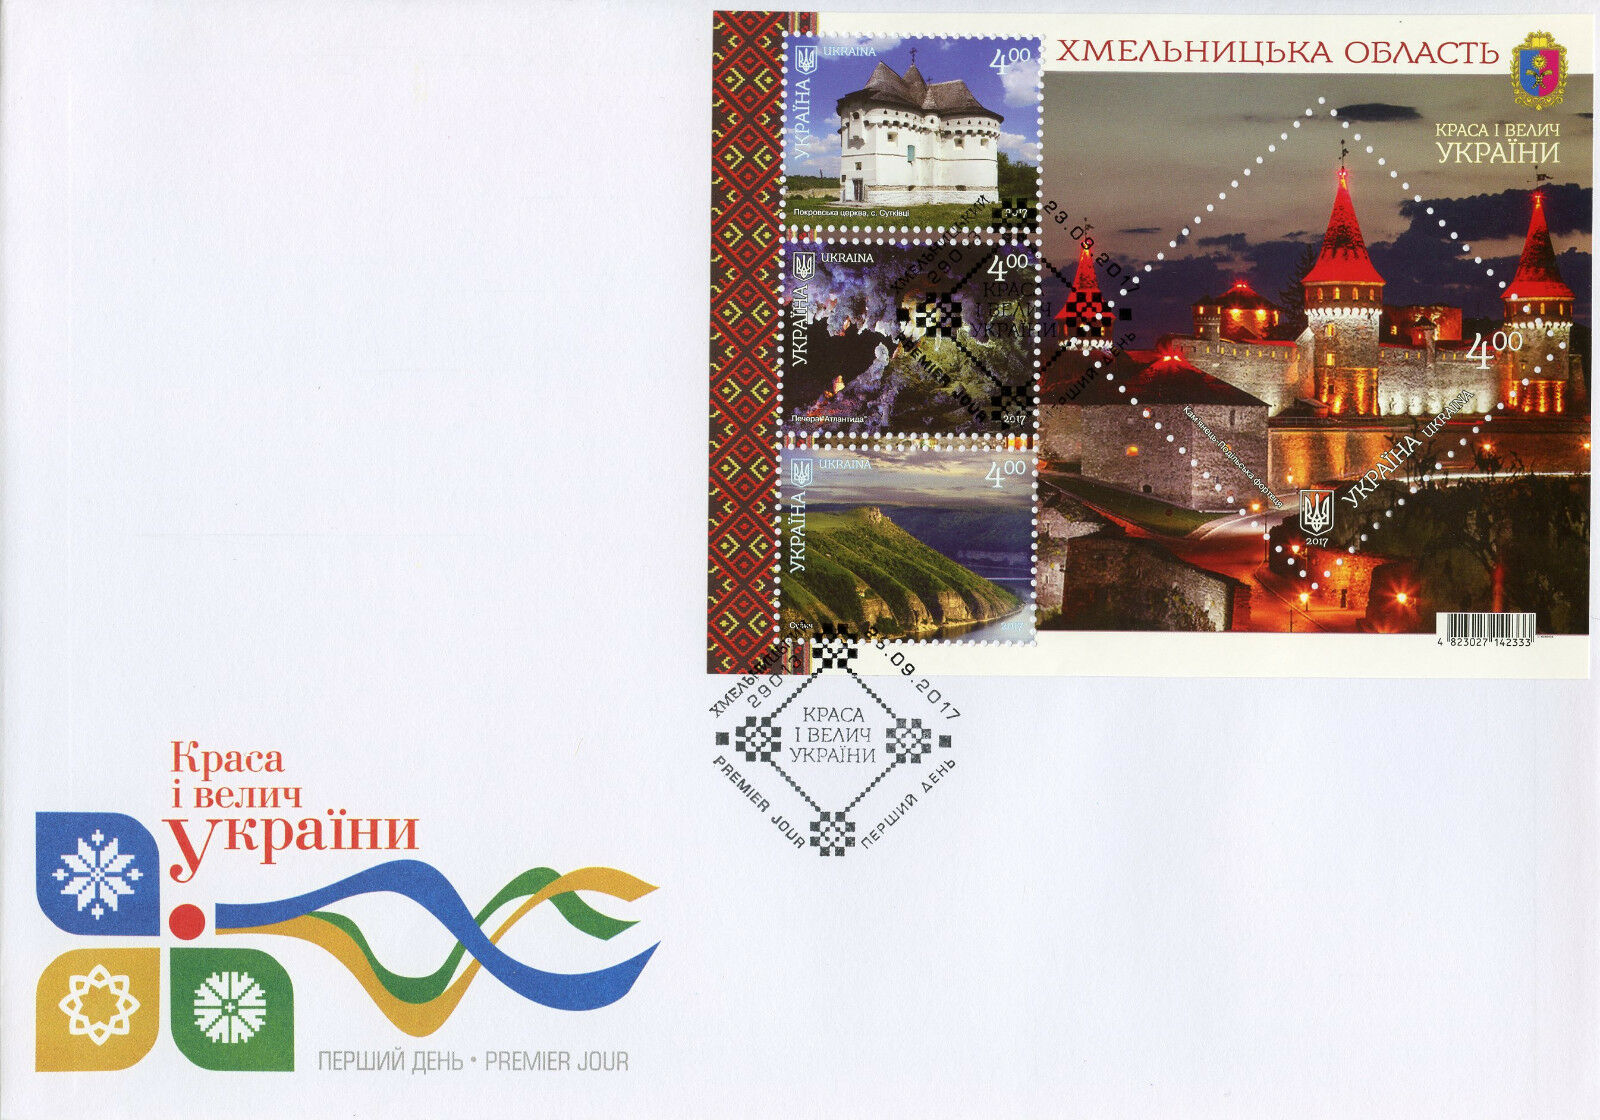 Ukraine 2017 FDC Khmelnytskyi Oblast Region 4v M/S Cover Tourism Stamps